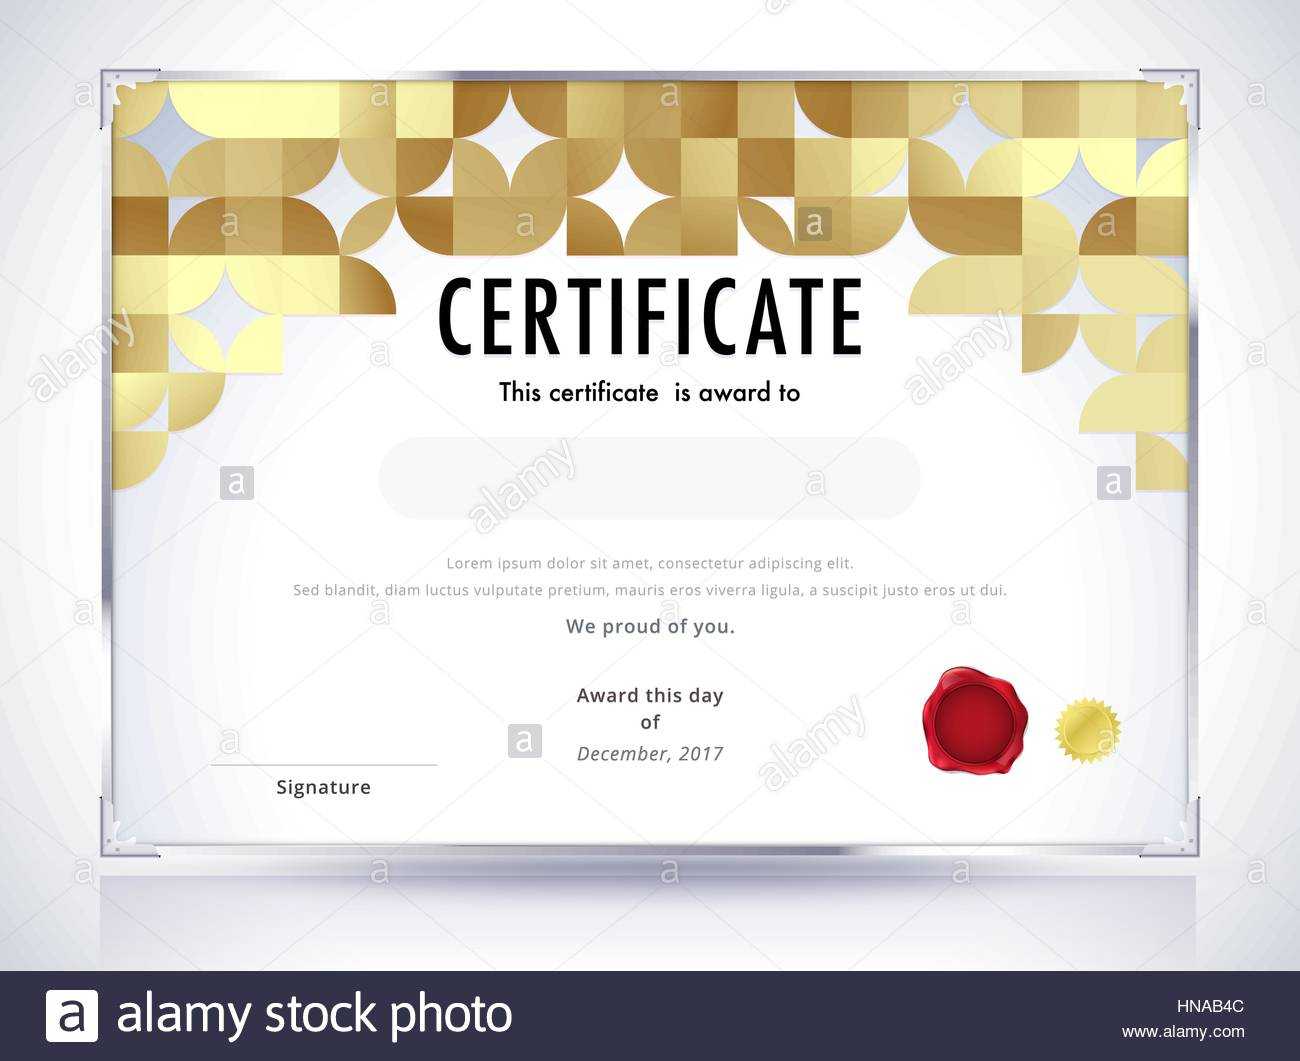 Golden Certificate Template Design. Luxury Certificate For Design A Certificate Template